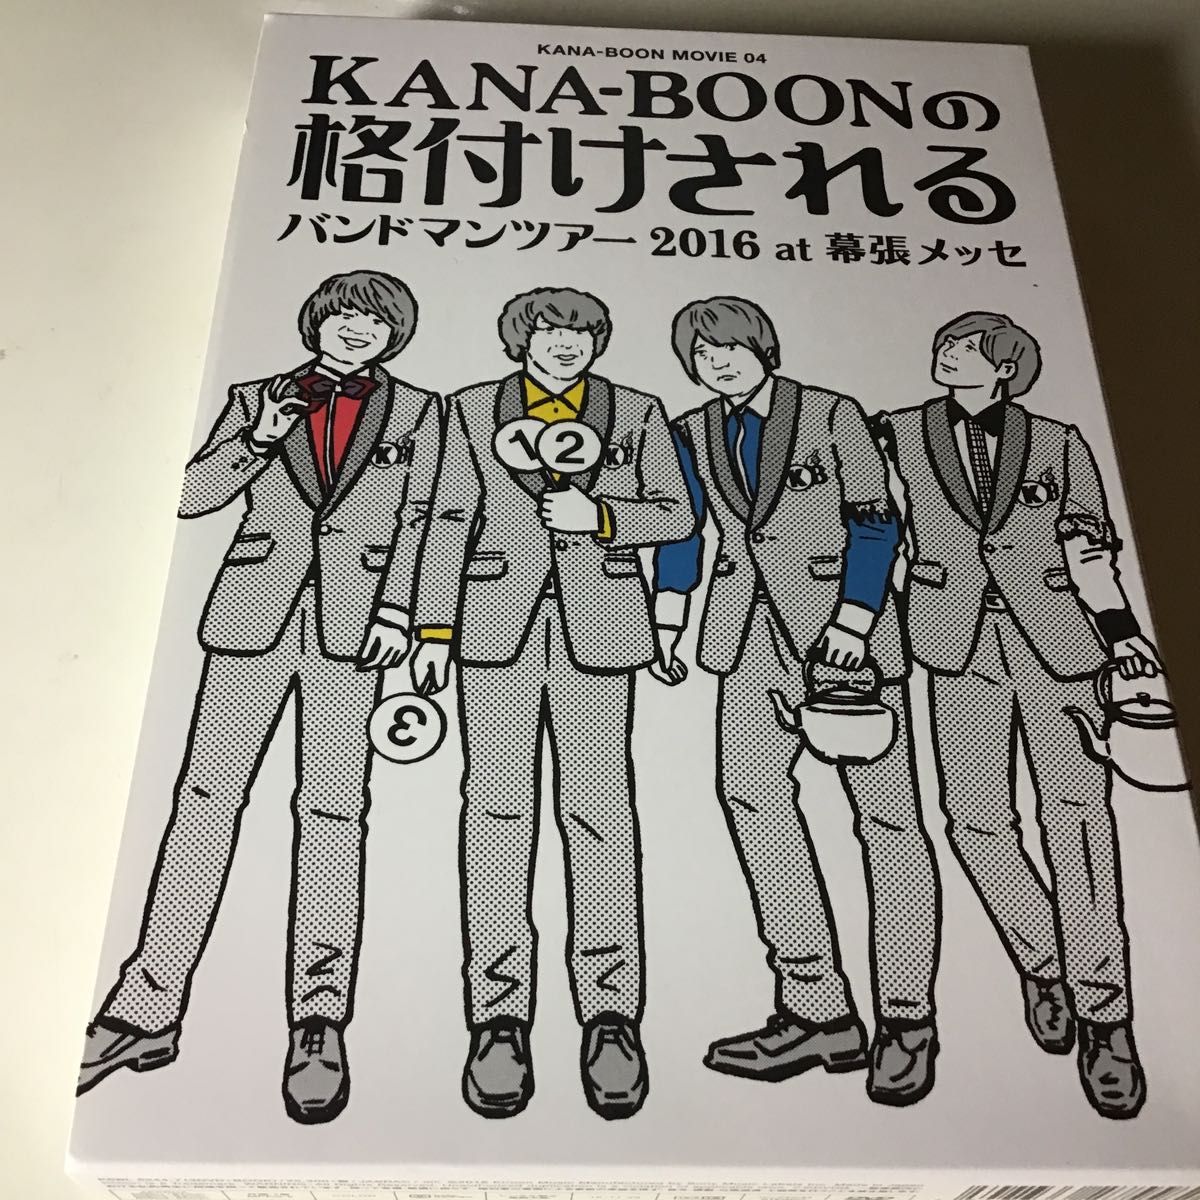 KANA-BOON MOVIE 04/KANA-BOONの格付けされるバンドマンツアー 2016 at 幕張メッセ (初回生産限